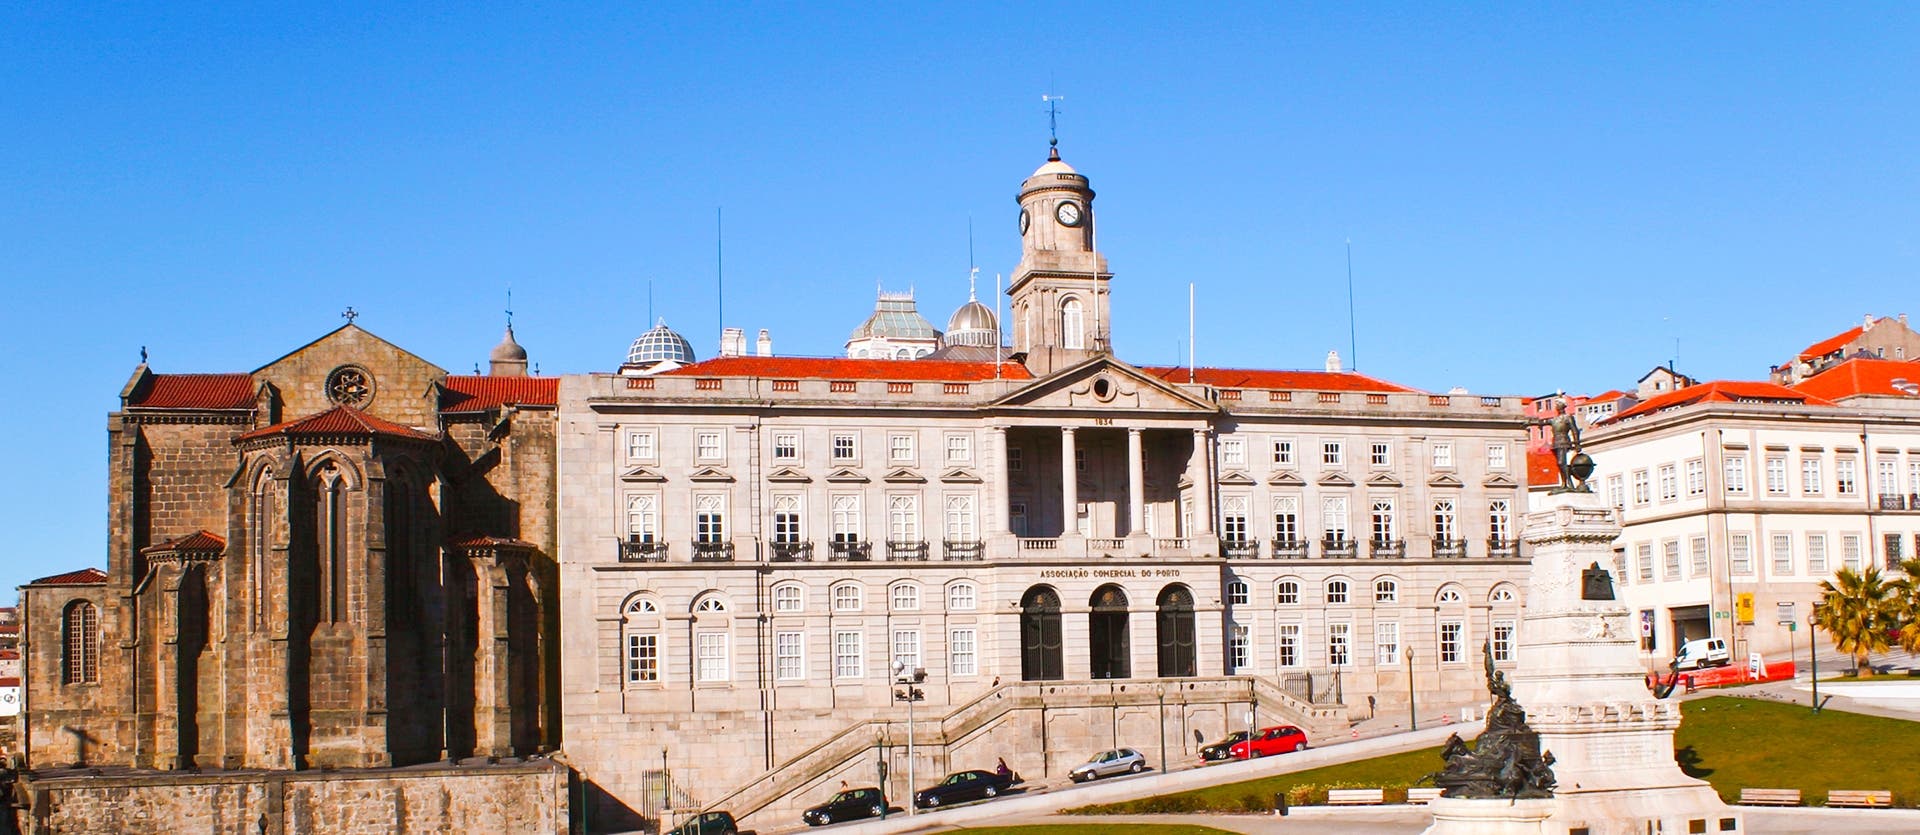 Oporto <span class="iconos separador"></span> Palacio de la Bolsa